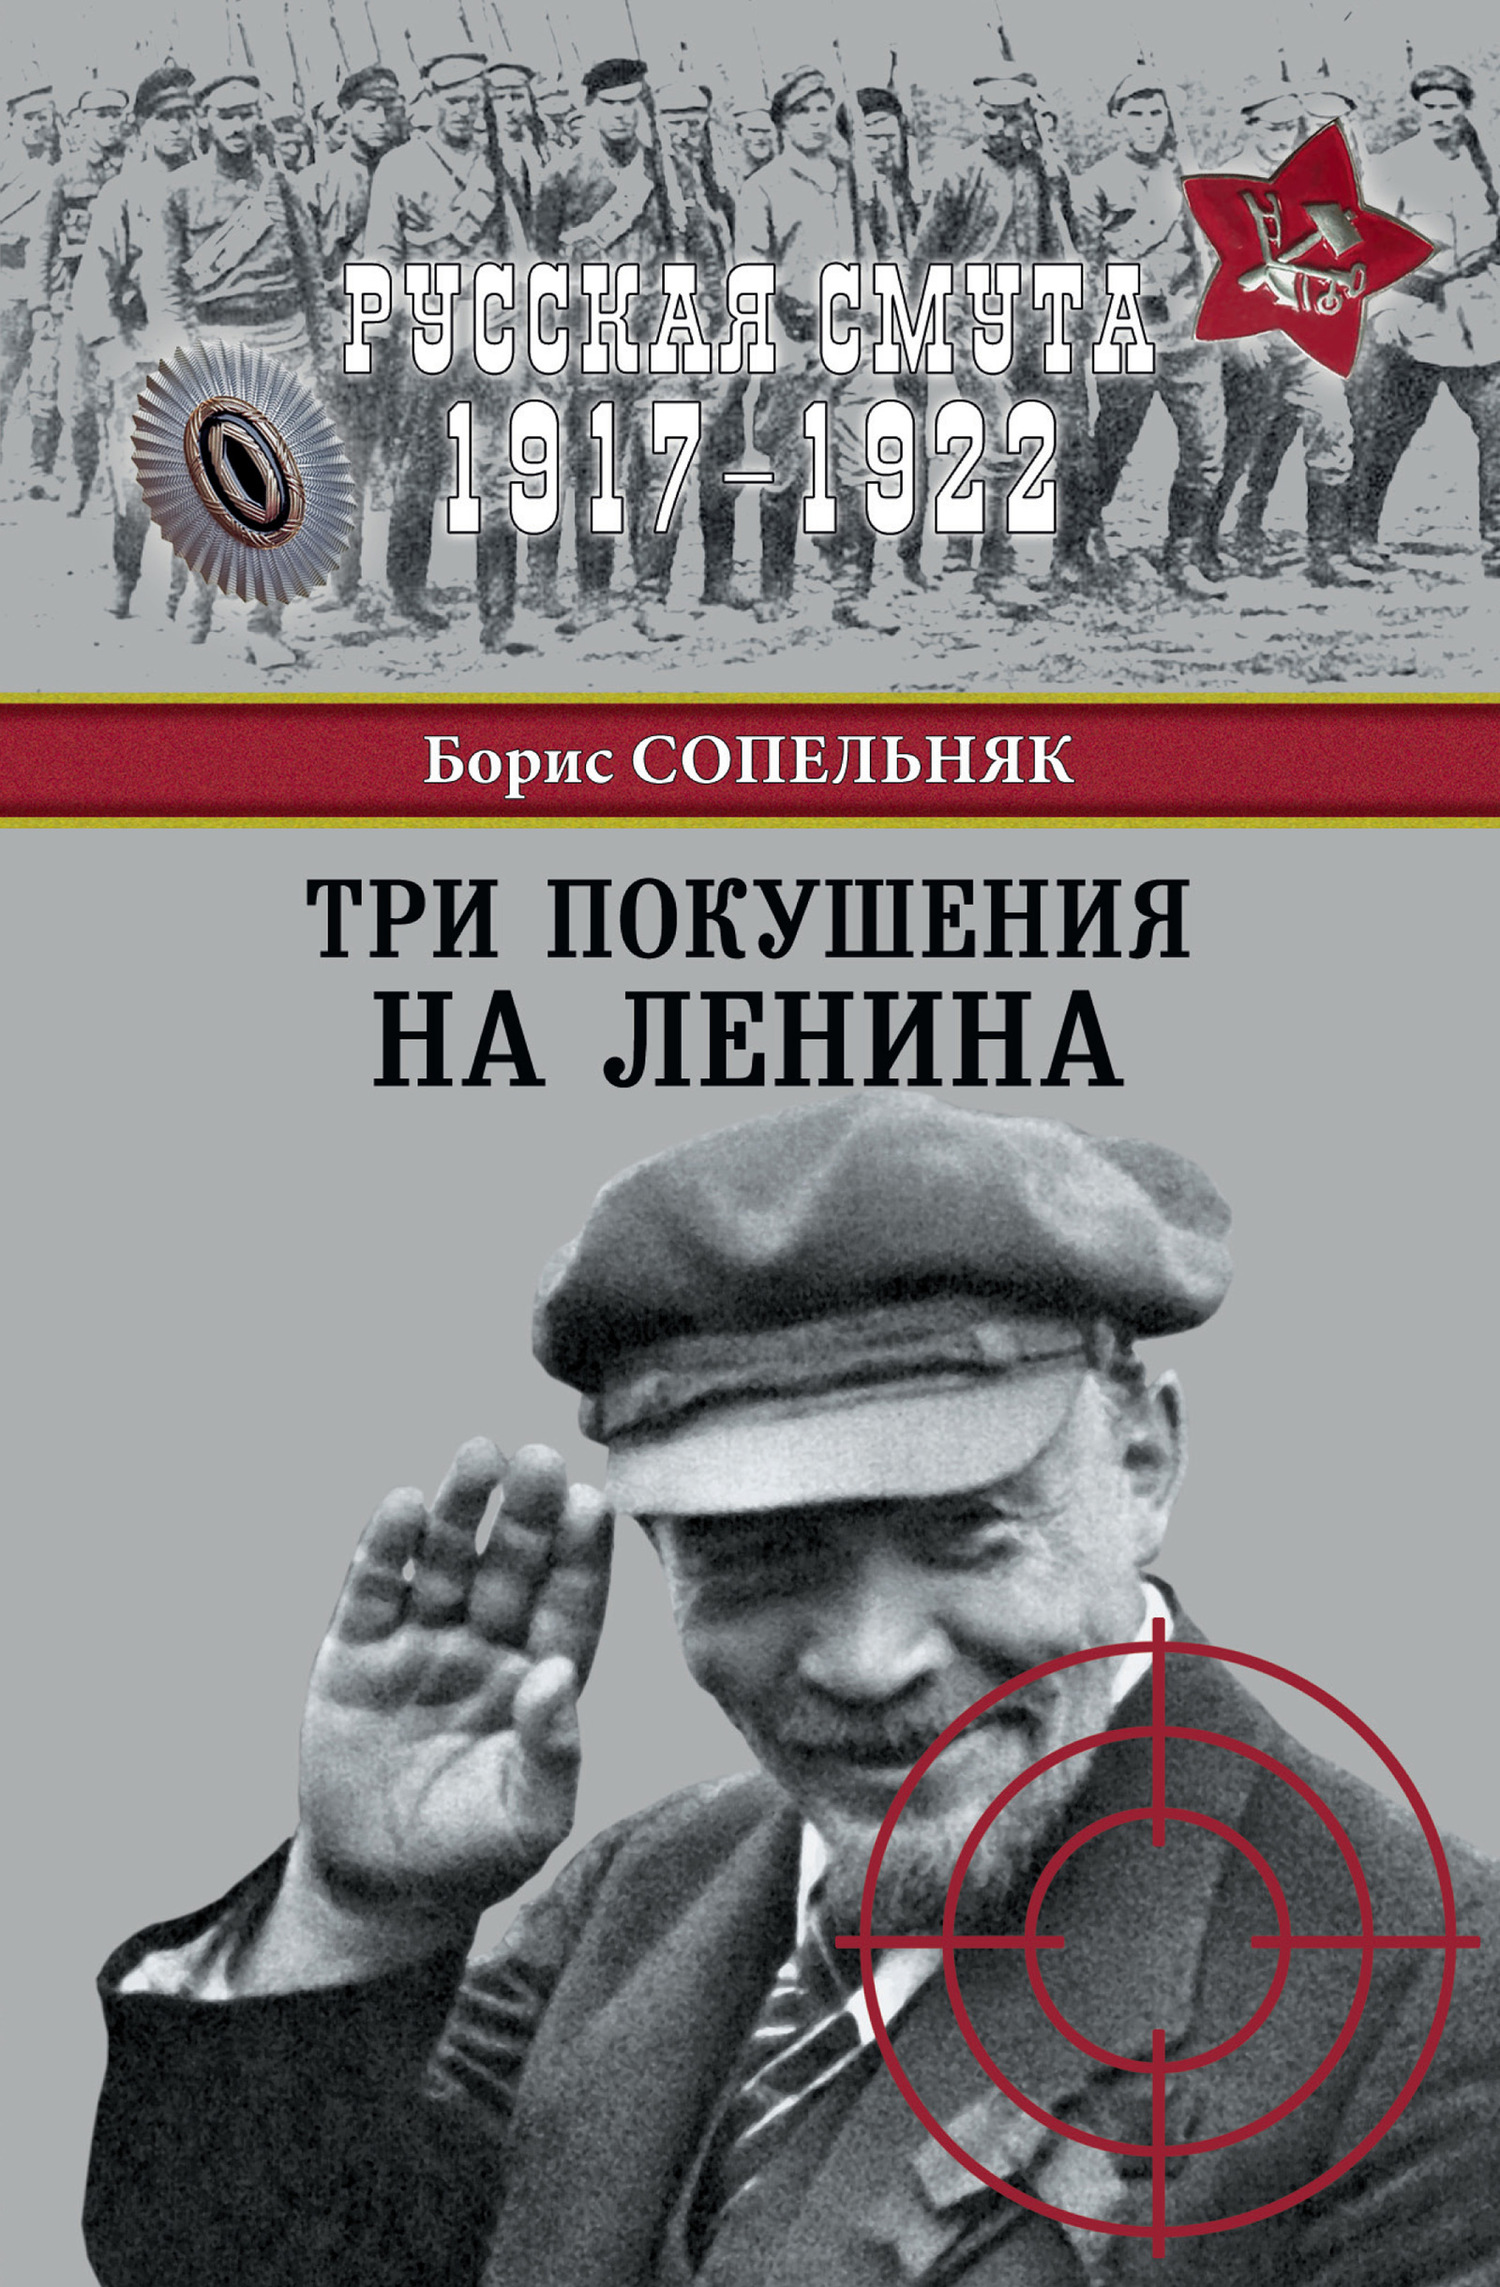 Сопельняк Борис - Три покушения на Ленина скачать бесплатно